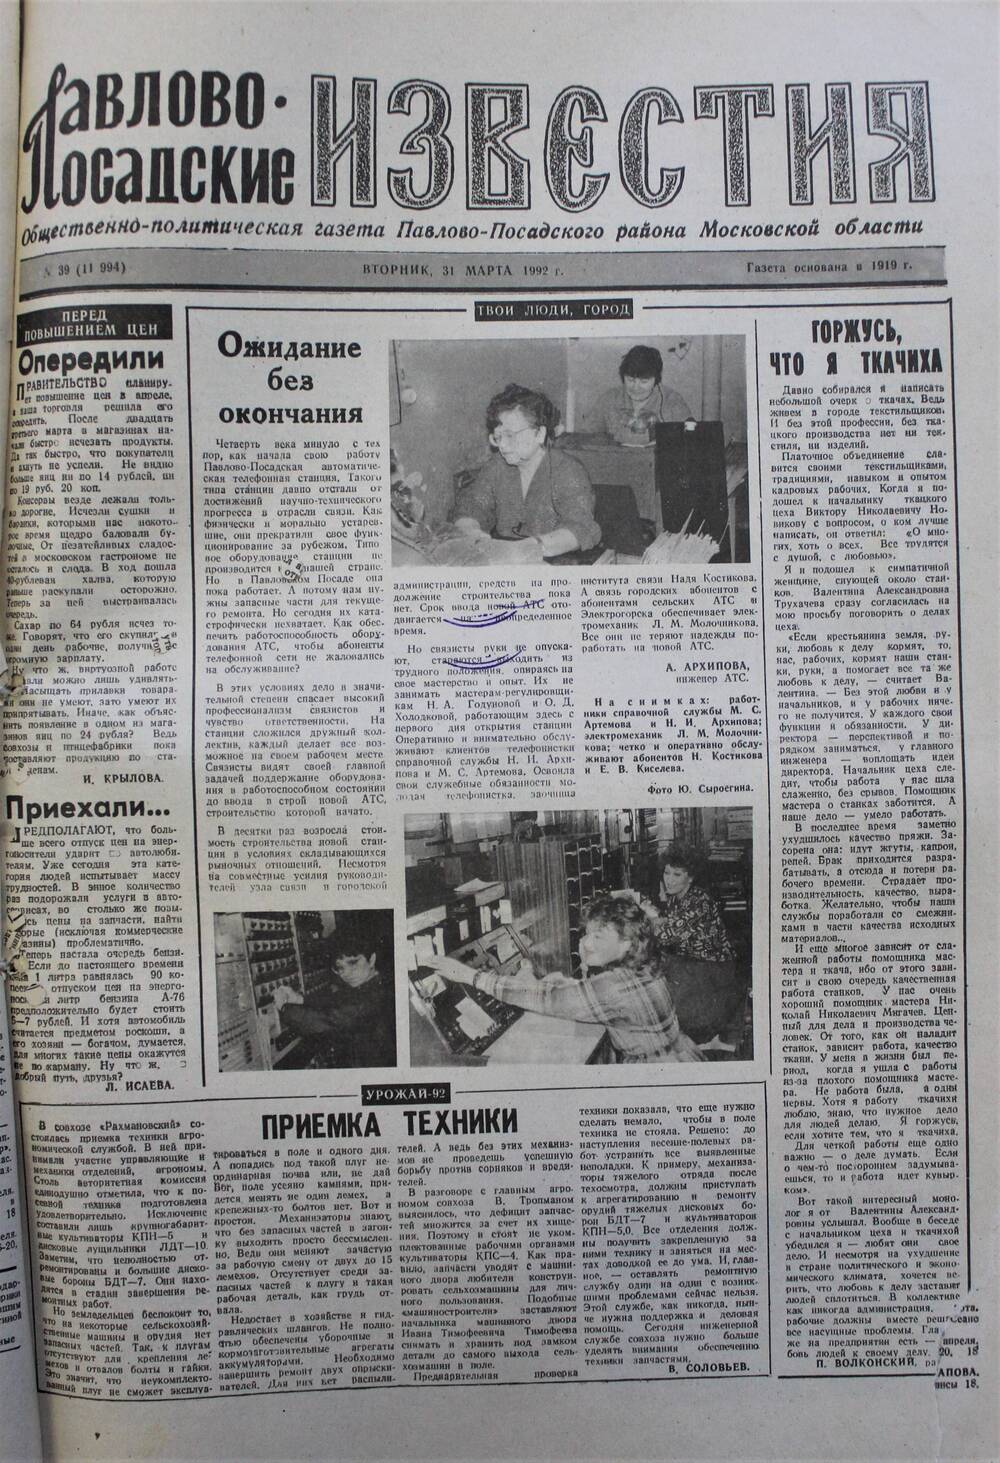 Газета Павлово-Посадские известия № 39 (11994)  от 31 марта 1992 г.